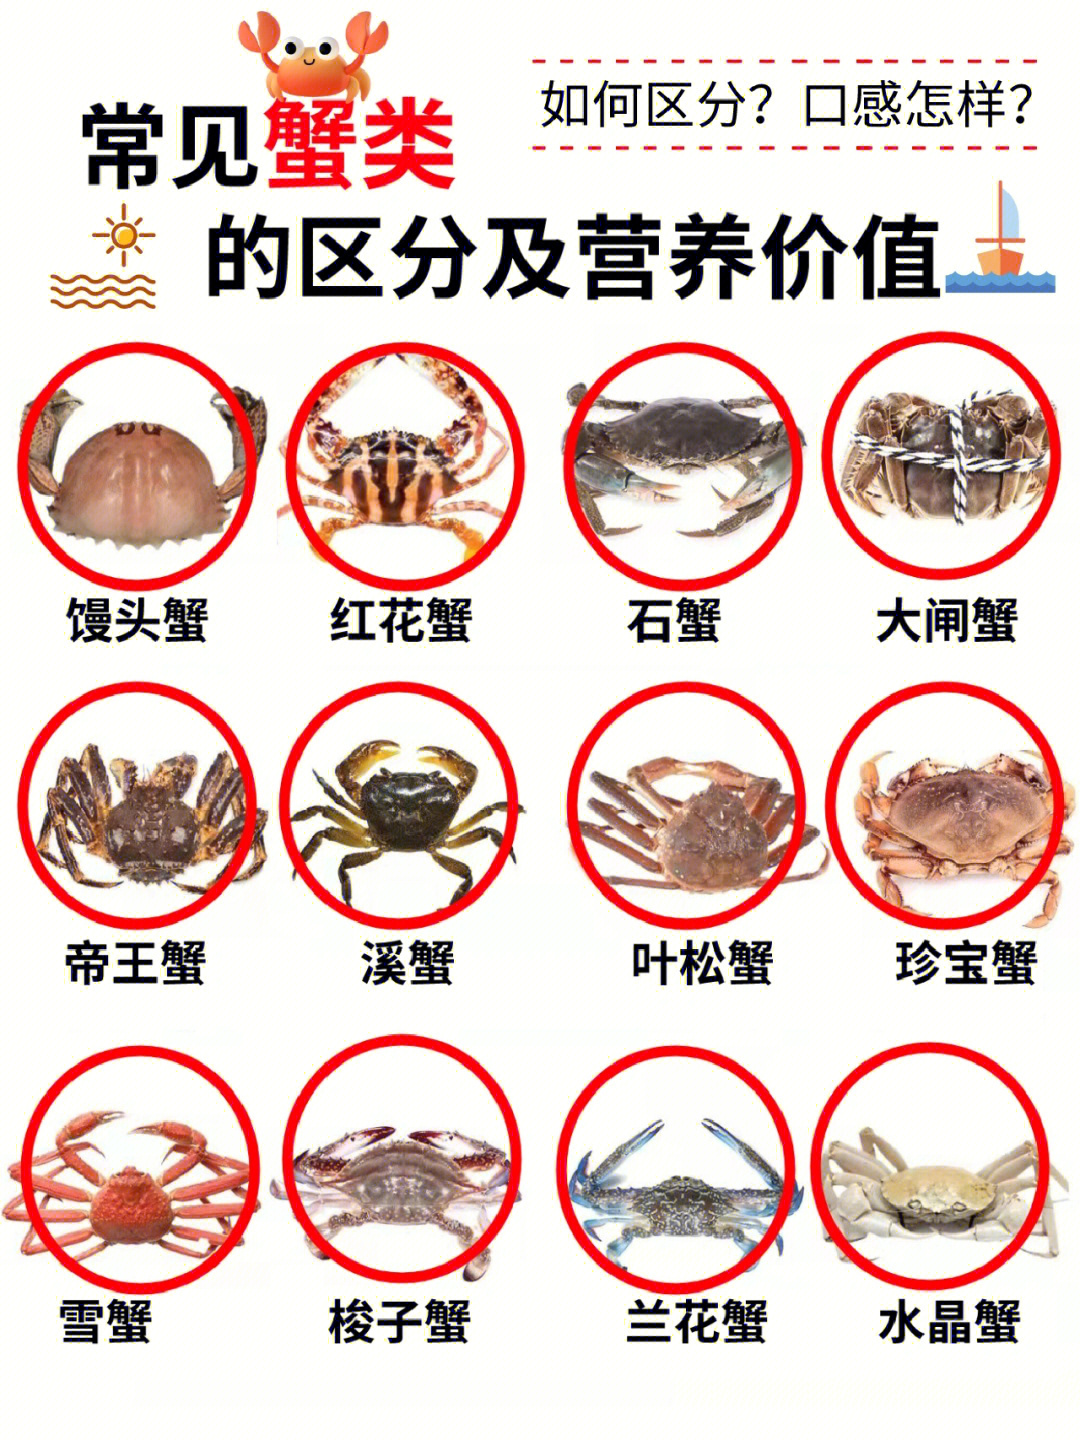 这时候的螃蟹肉特别肥嫩,但在挑螃蟹的时候,一定要选好螃蟹的品种,不